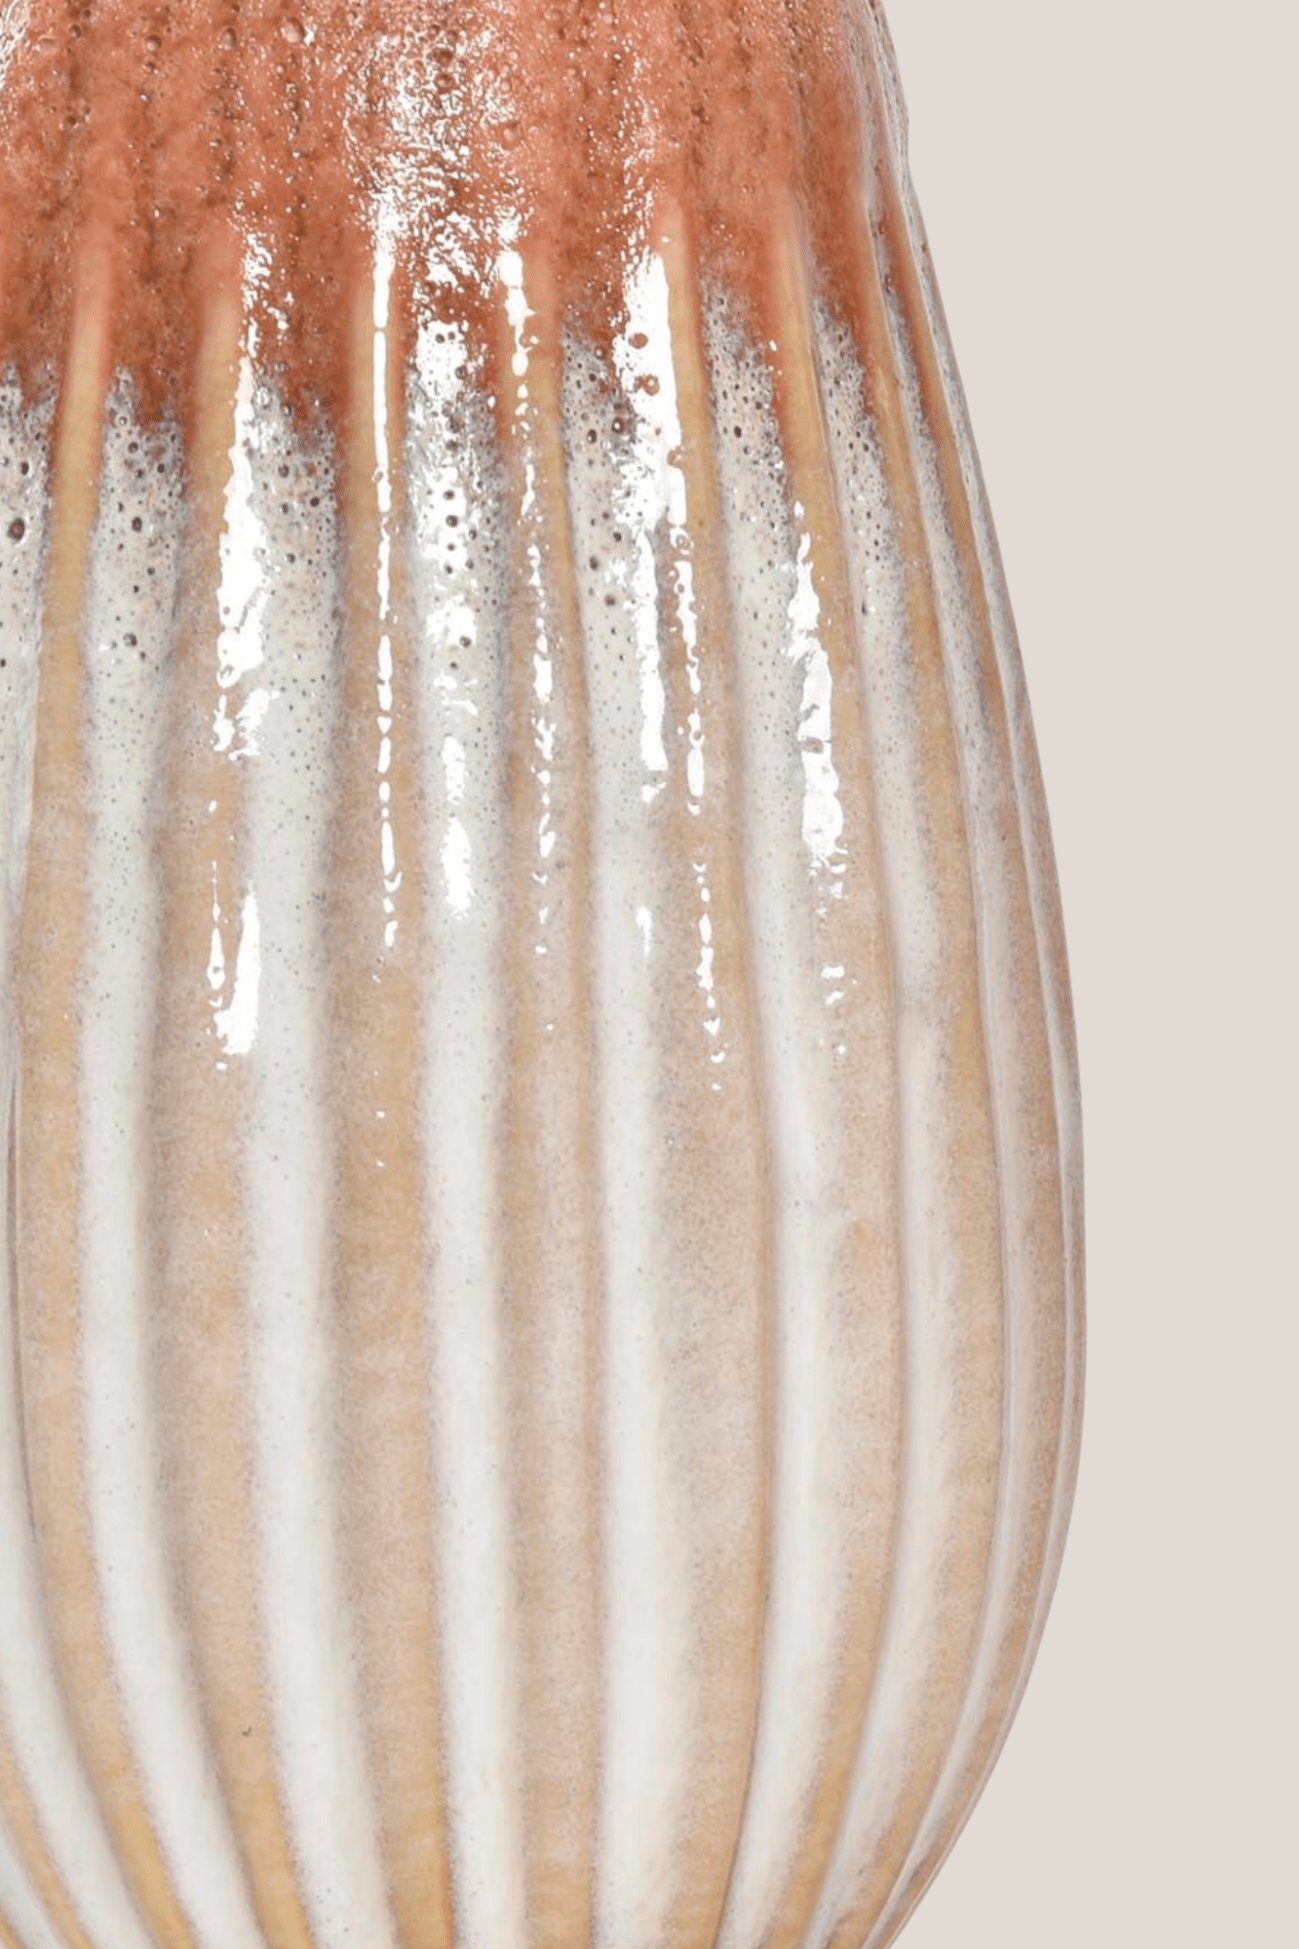 Item International Jaul Vaso sfumato in ceramica in stile etnico